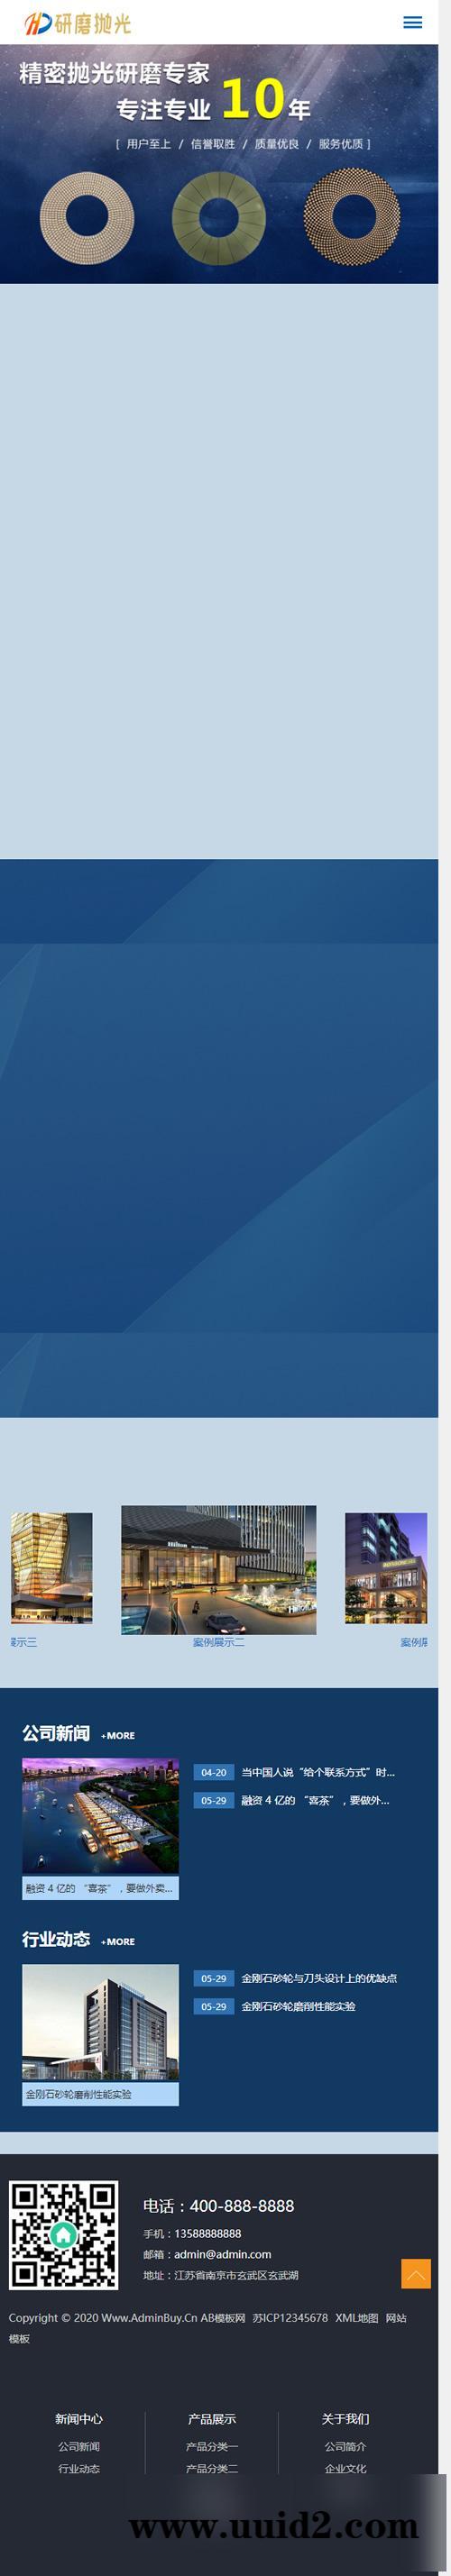 响应式陶瓷研磨盘抛光类网站源码 蓝色html5抛光设备网站织梦模板(自适应手机版)